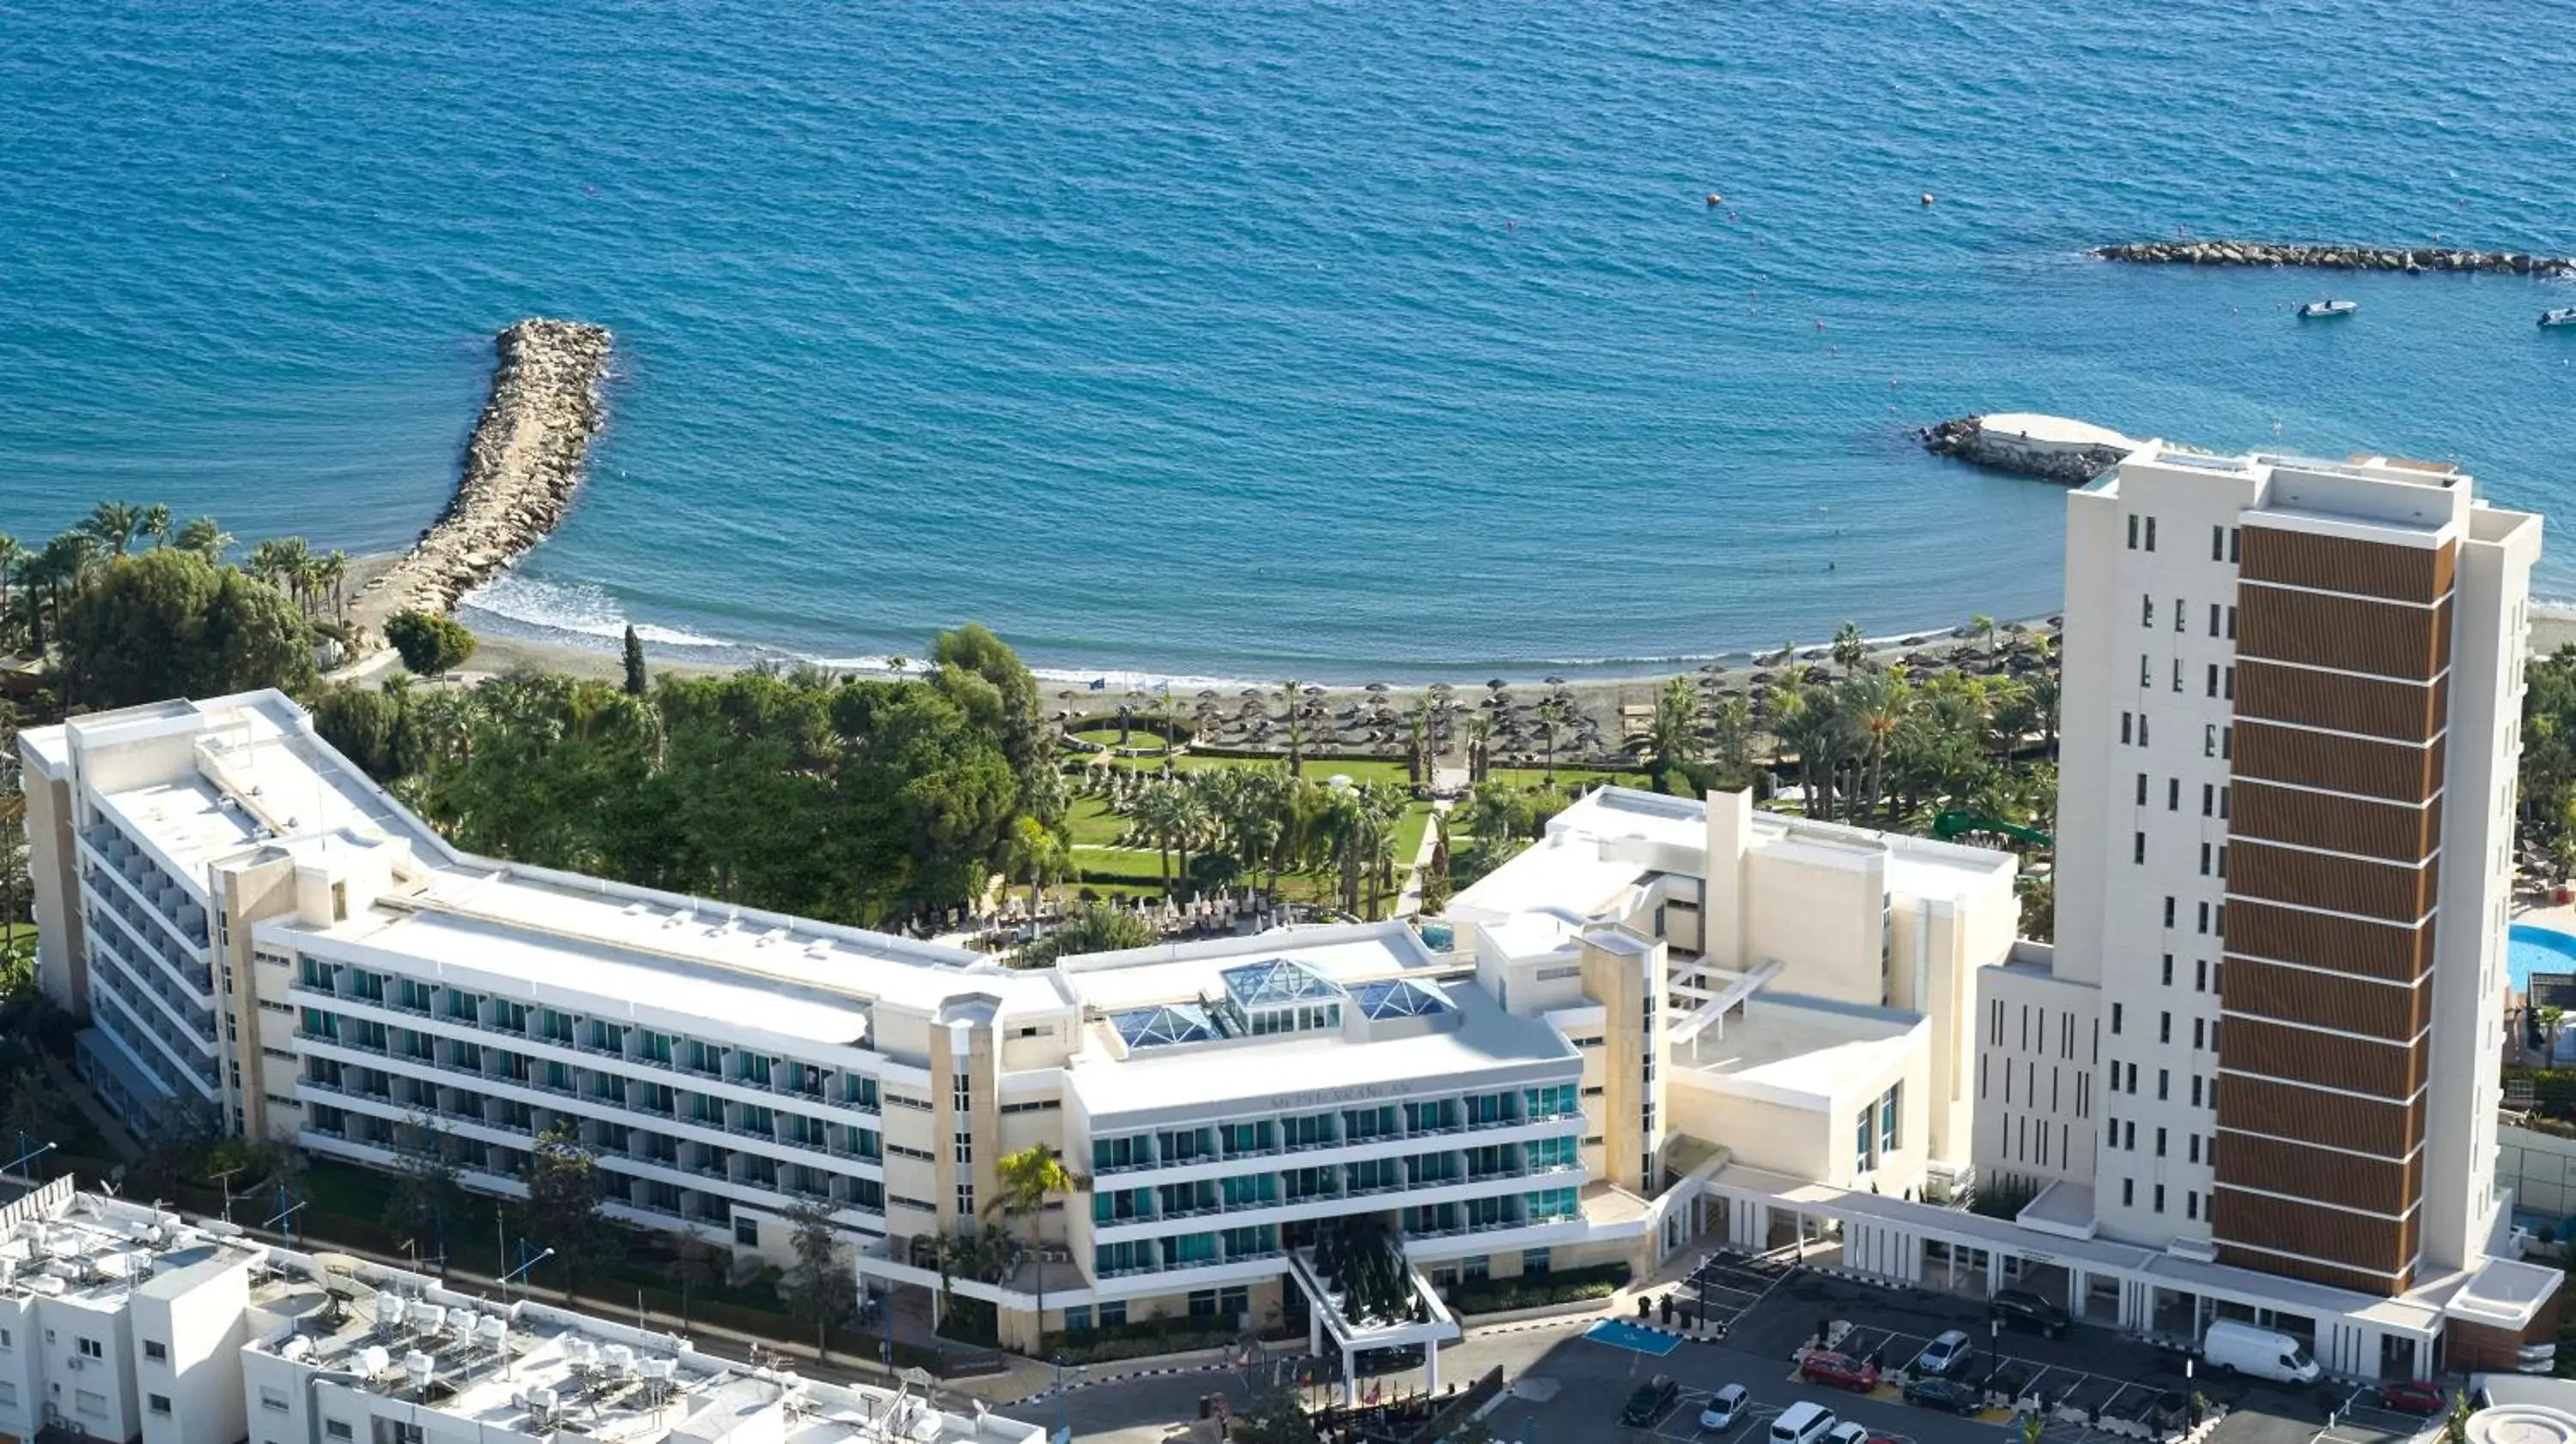 Property building, Bird's-eye View in Mediterranean Beach Hotel